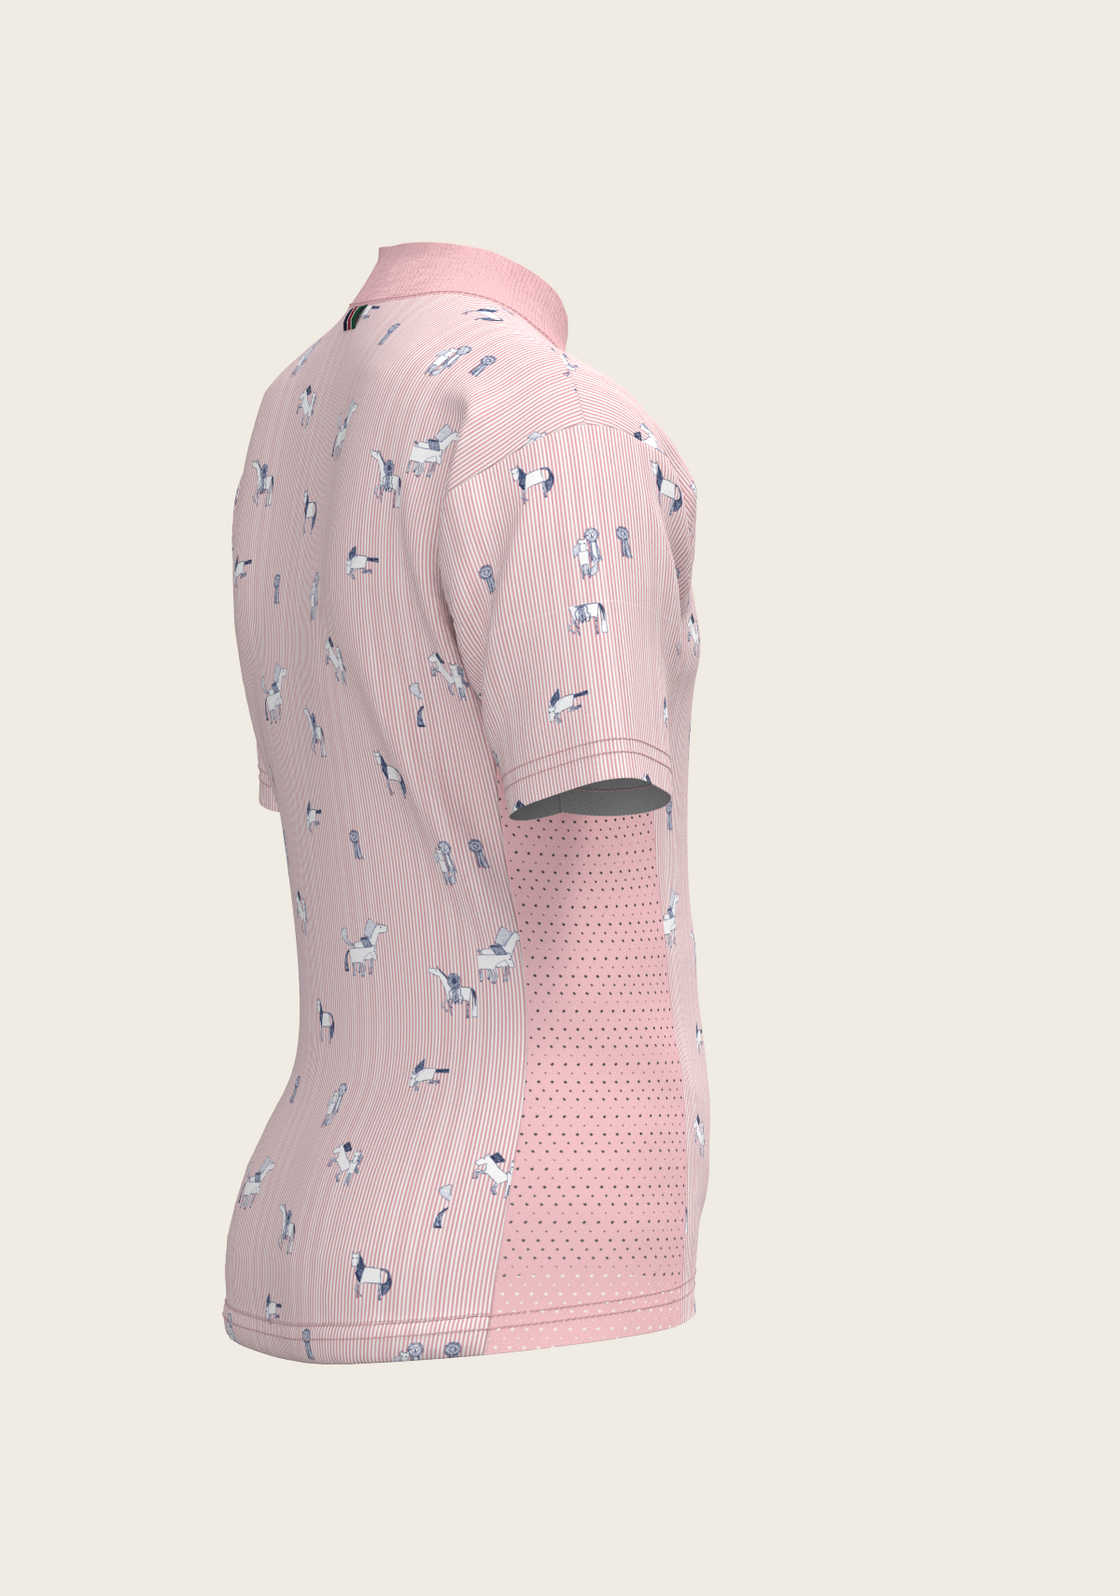 PRE ORDER • Stripes in Rose Children's Short Sleeve Shirt